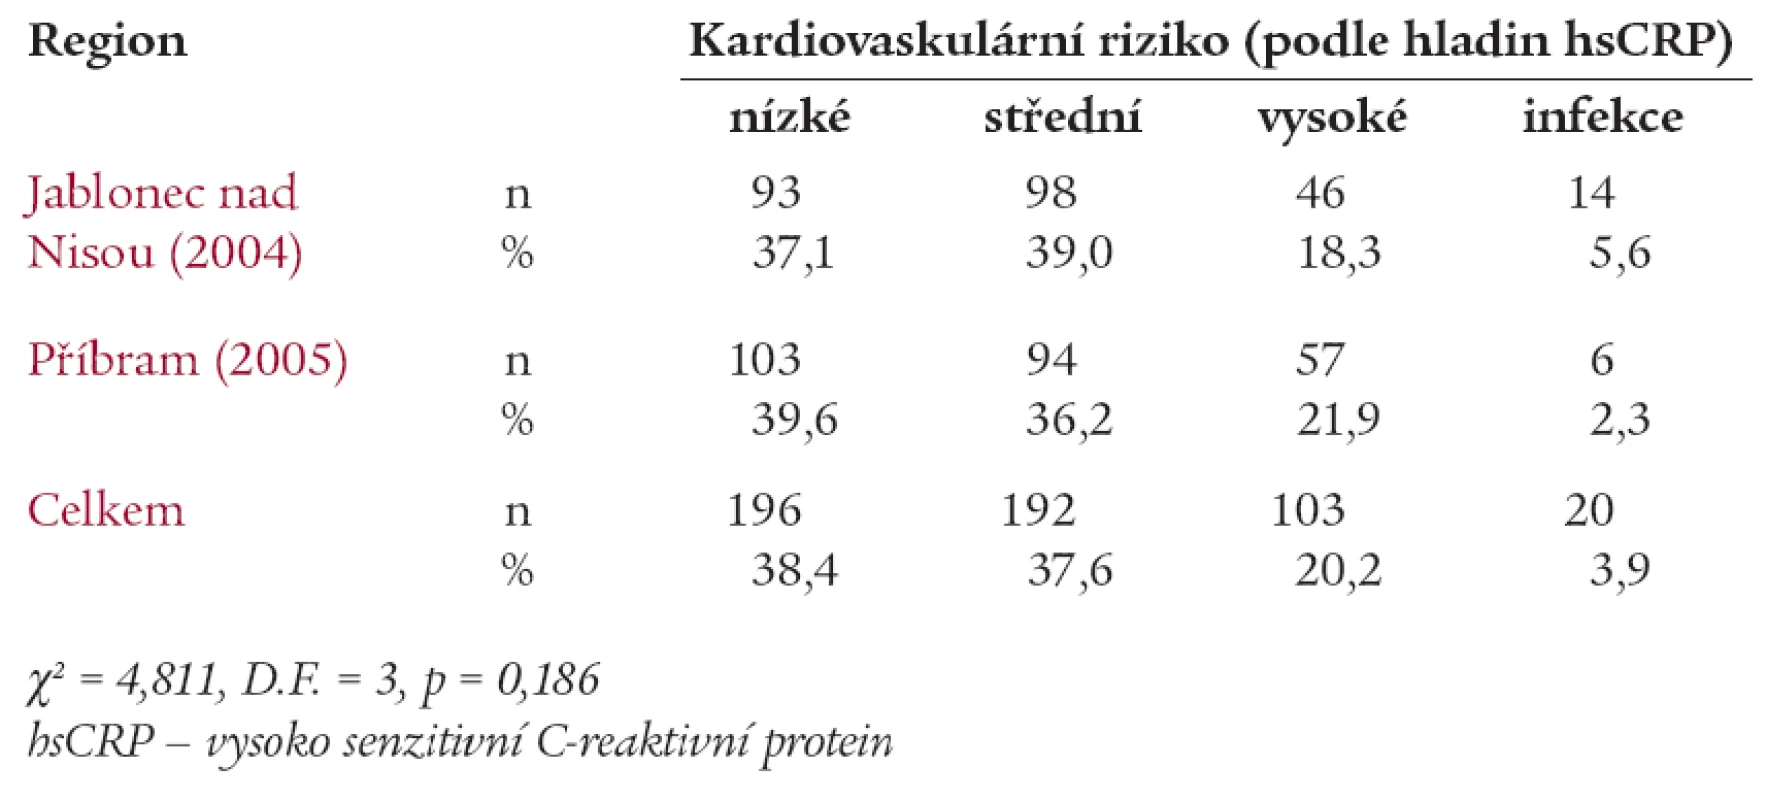 Prevalence rizika KVO (podle hladin hsCRP) ve sledovaných regionech České republiky.